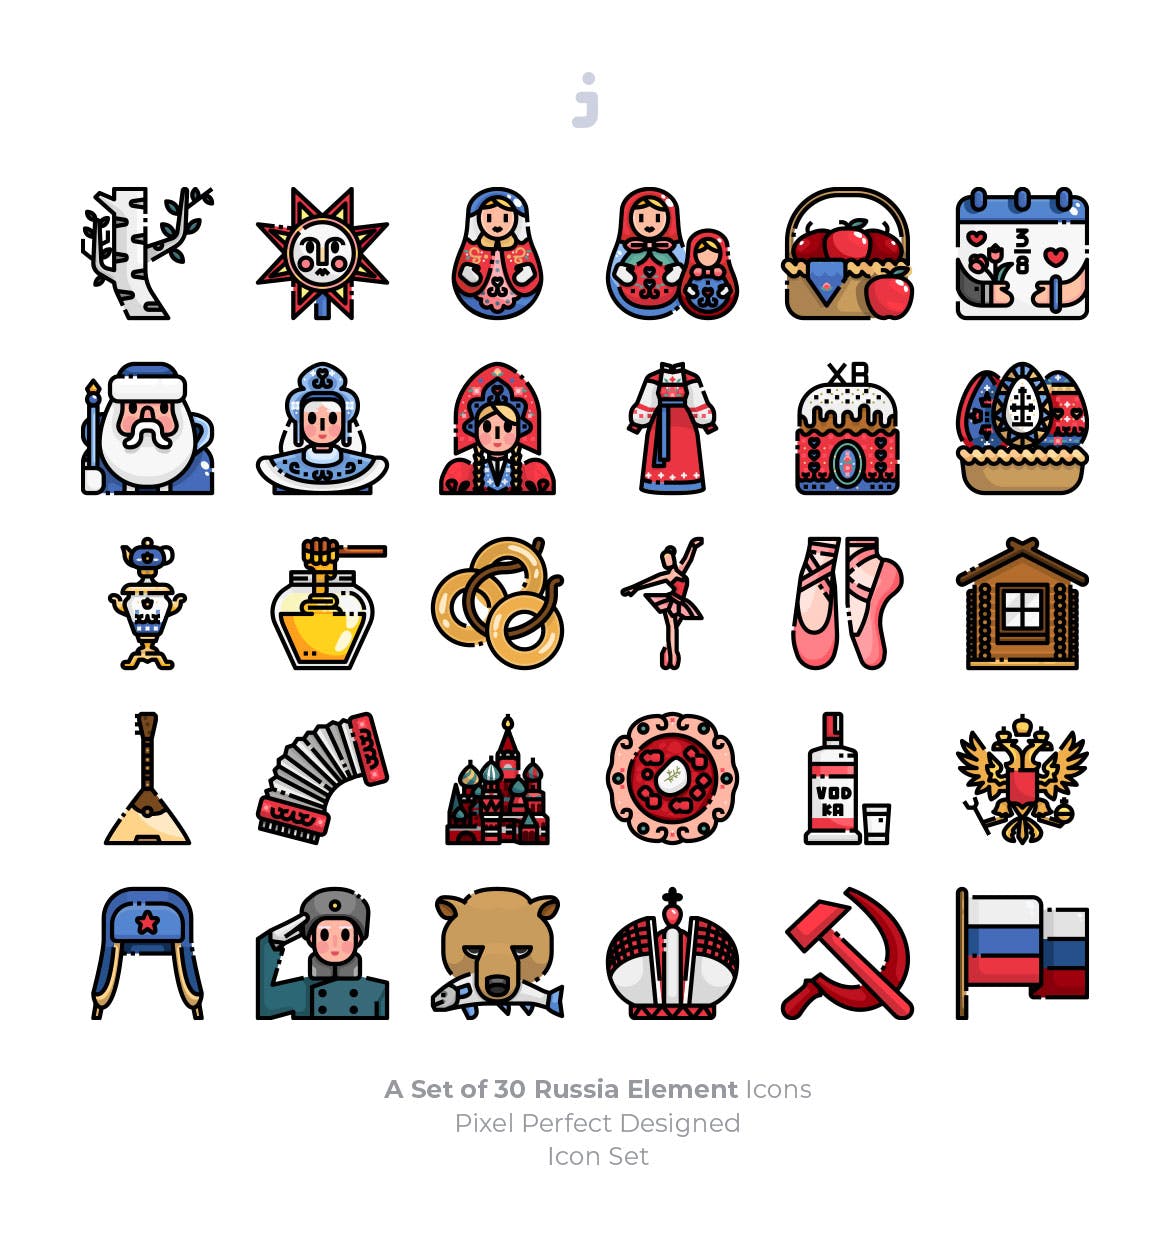 30枚彩色俄罗斯民族元素矢量素材库精选图标 30 Russia Element Icons插图(1)